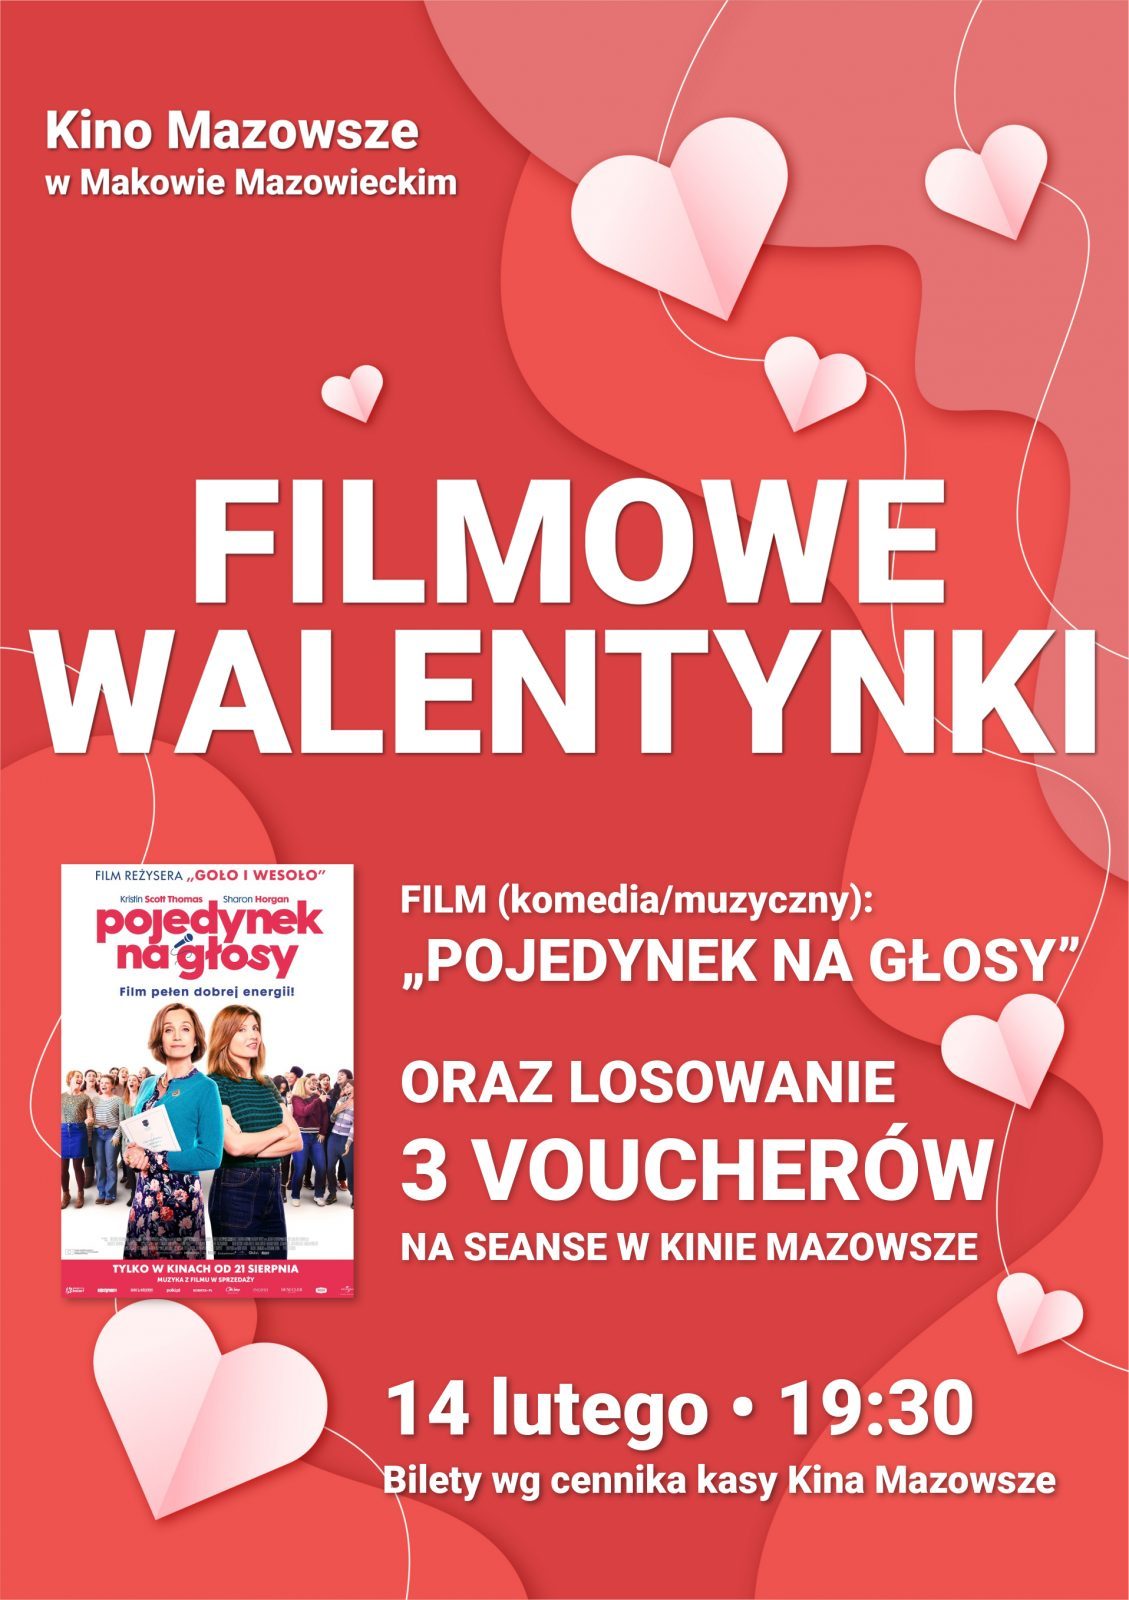 Filmowe Walentynki - 14 lutego o godzinie 19:30 w Kinie Mazowsze. W programie: film "POJEDYNEK NA GŁOSY" oraz losowanie 3 voucherów na seanse filmowe.